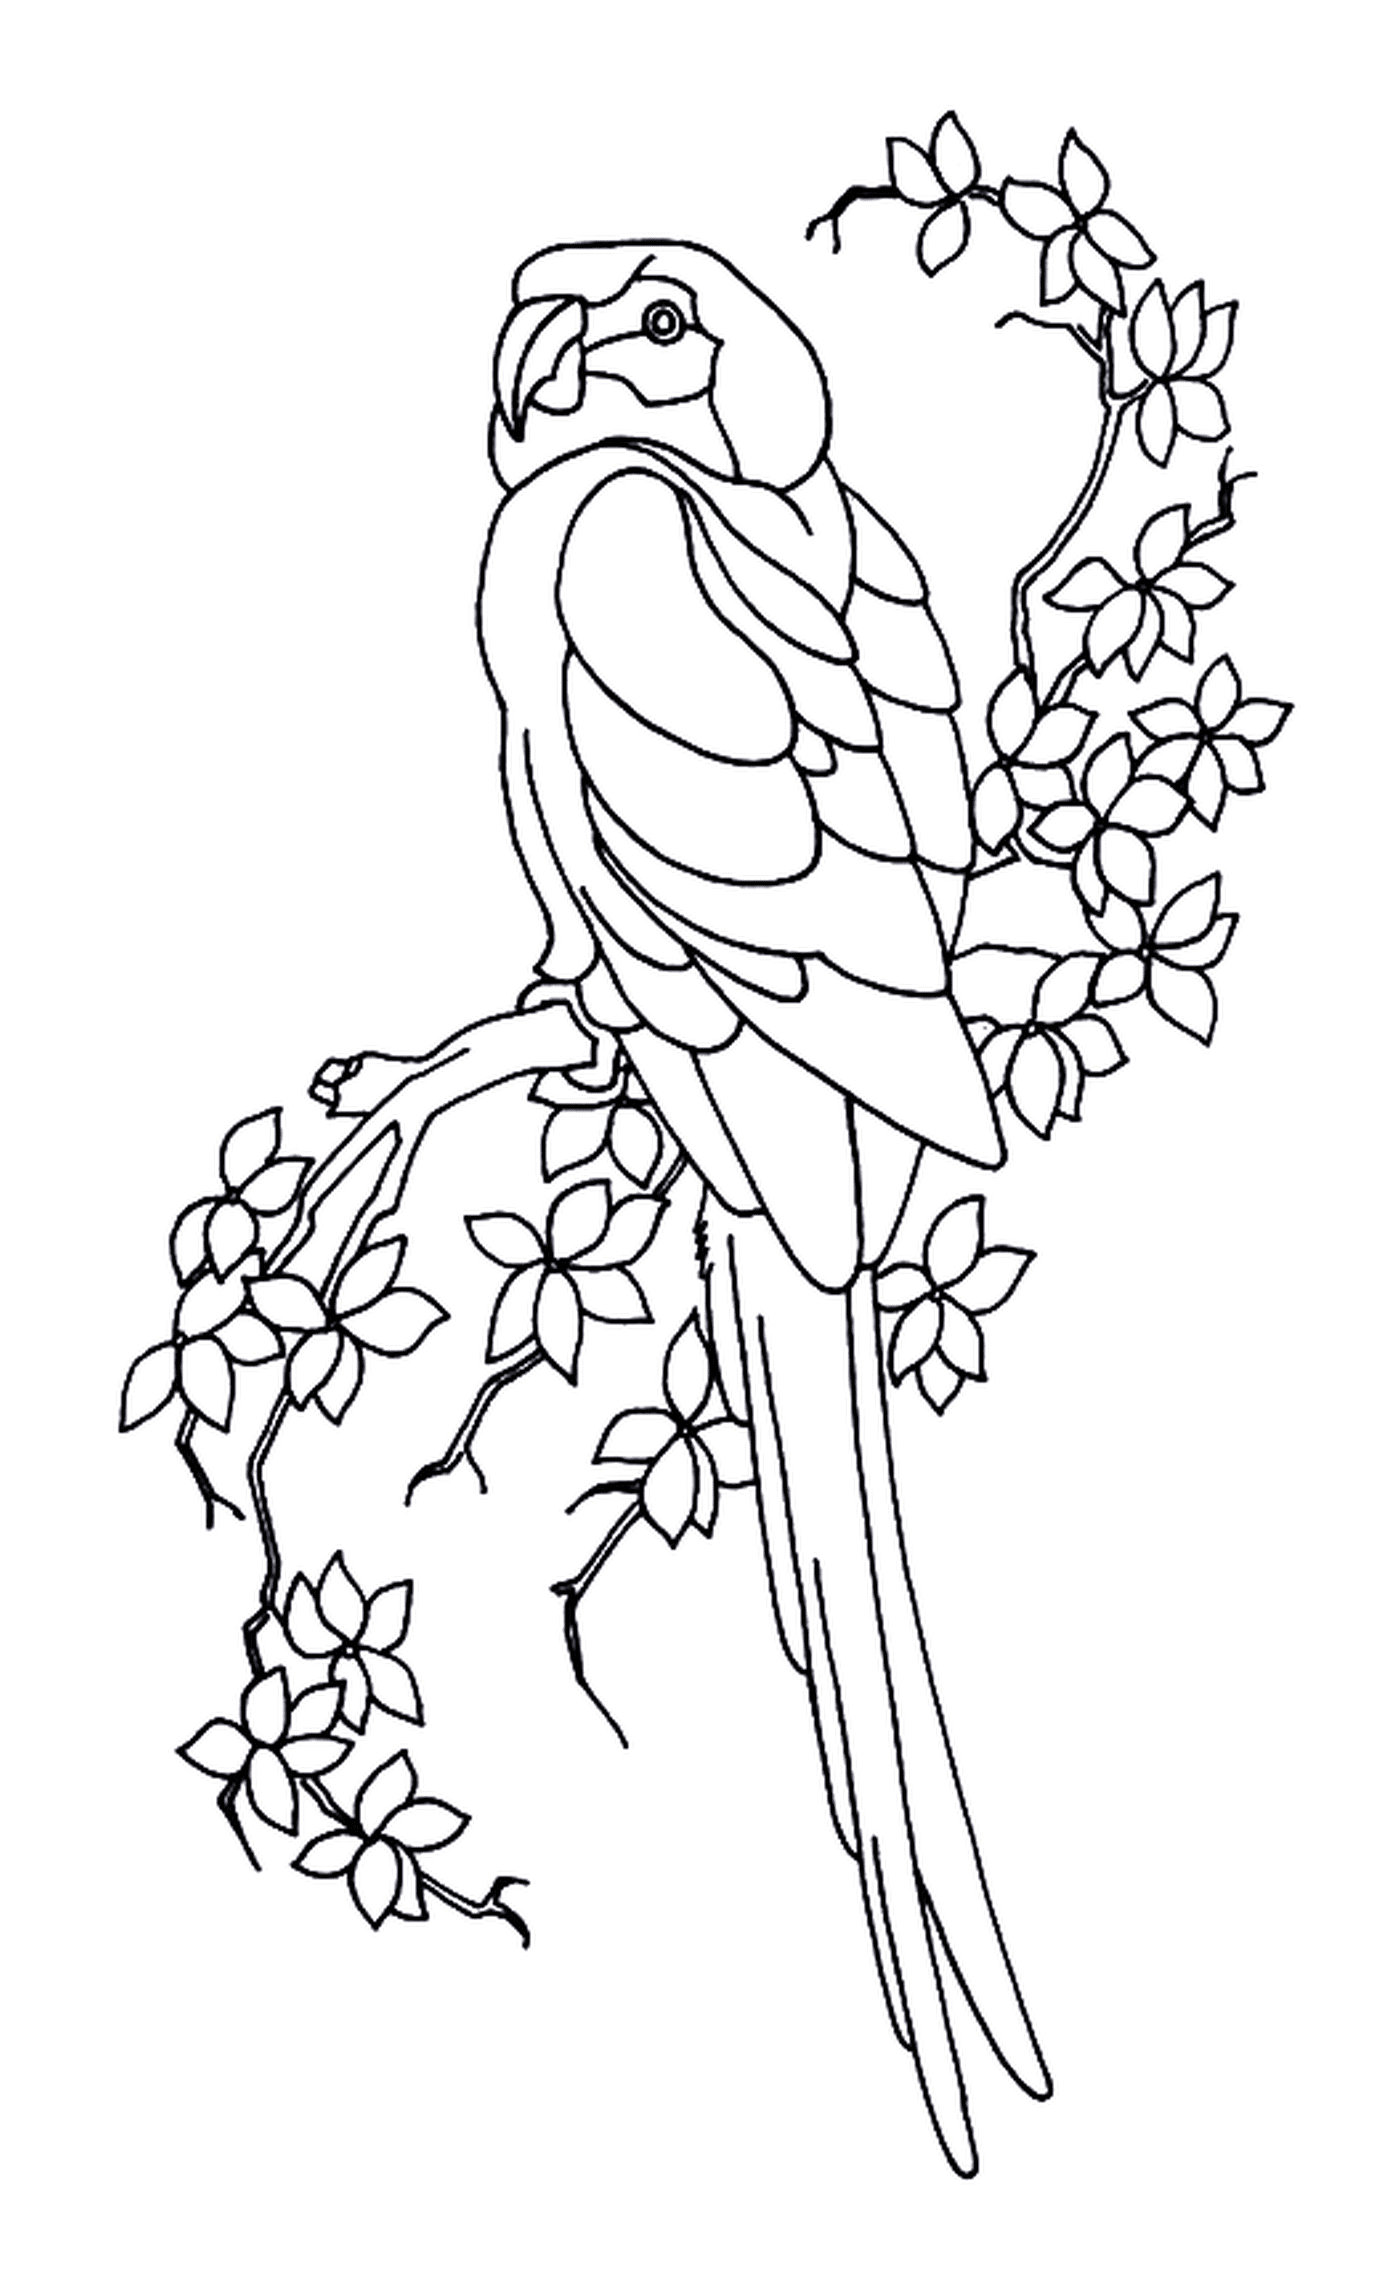  Perrota e foglie, uccello arroccato su un ramo d'albero 